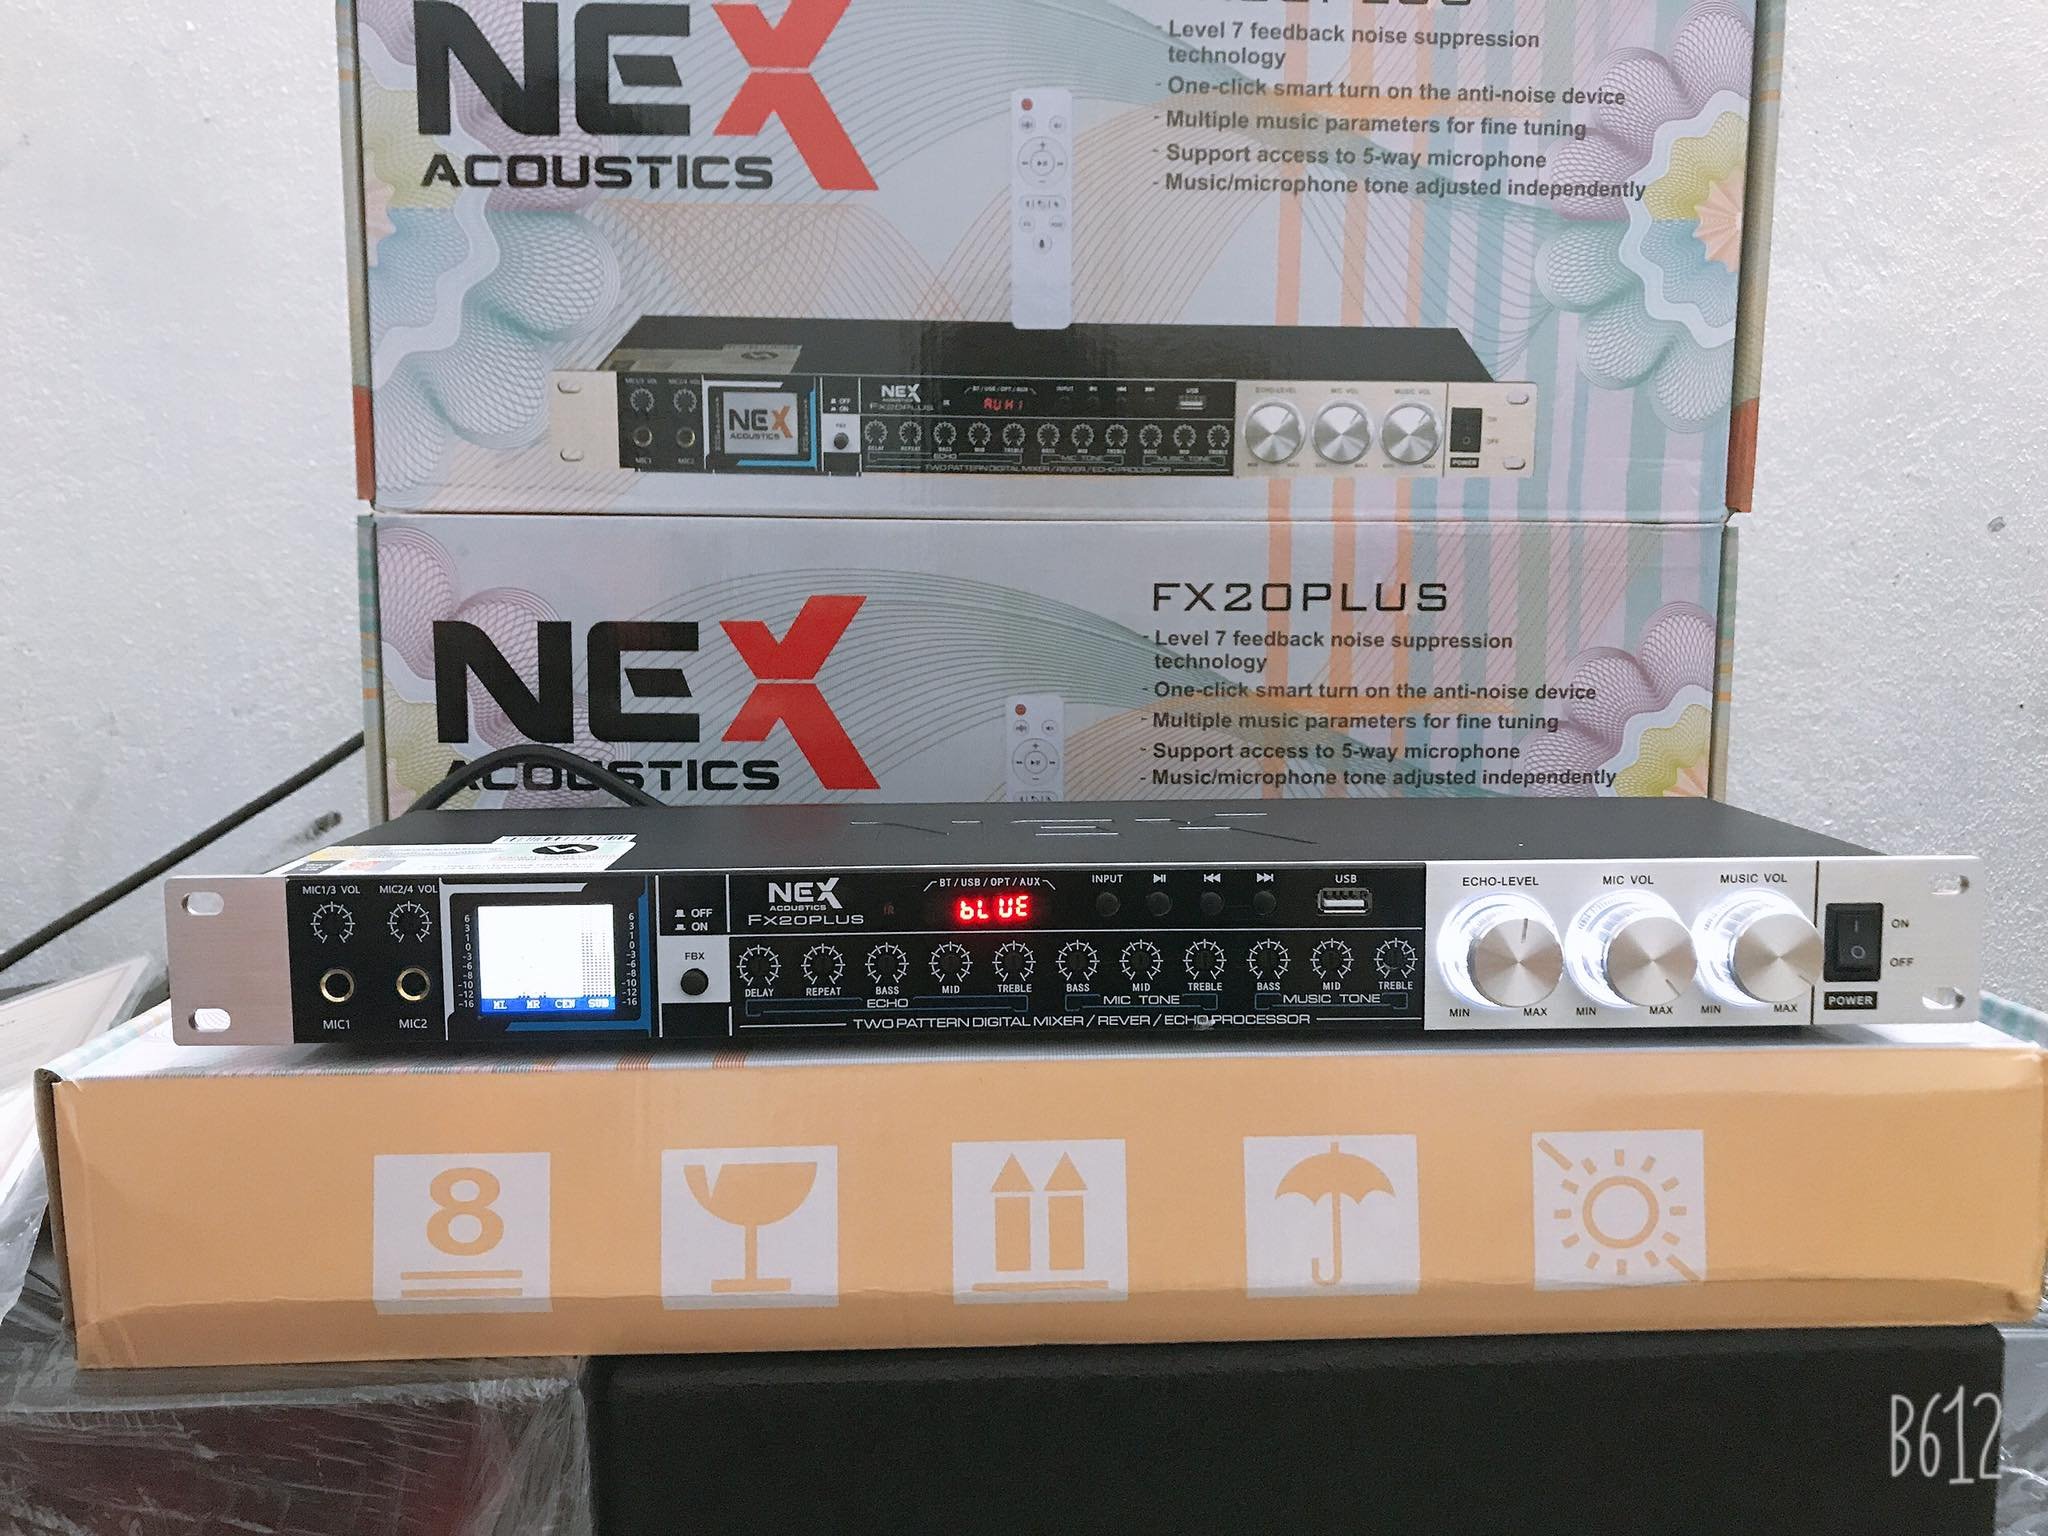 Vang Cơ NEX FX 20 PLUS - Vang Cơ Karaoke Thế Hệ Mới. Chống Hú Cực Tốt, Có Cổng Kết Nối USB, Bluetooth, Bảo Hành 12 Tháng.